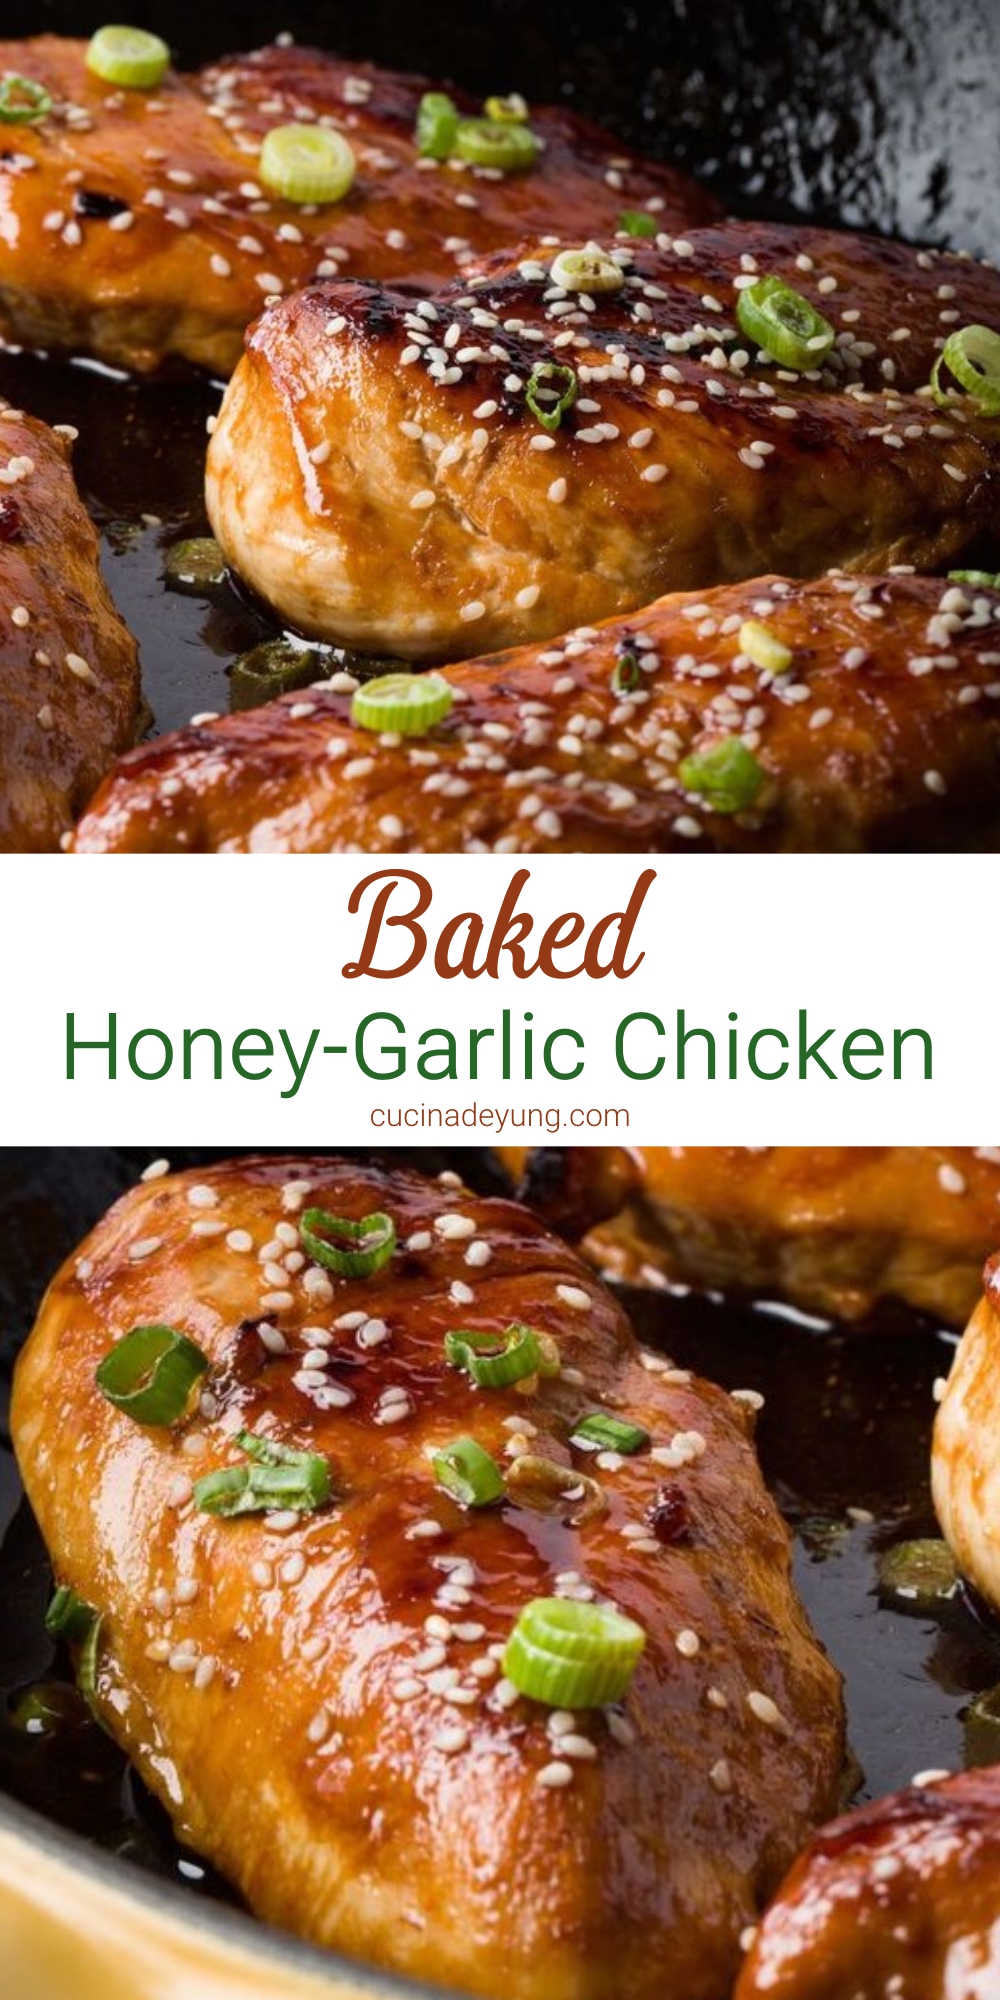 Baked Honey-Garlic Chicken Recipe – CUCINADEYUNG